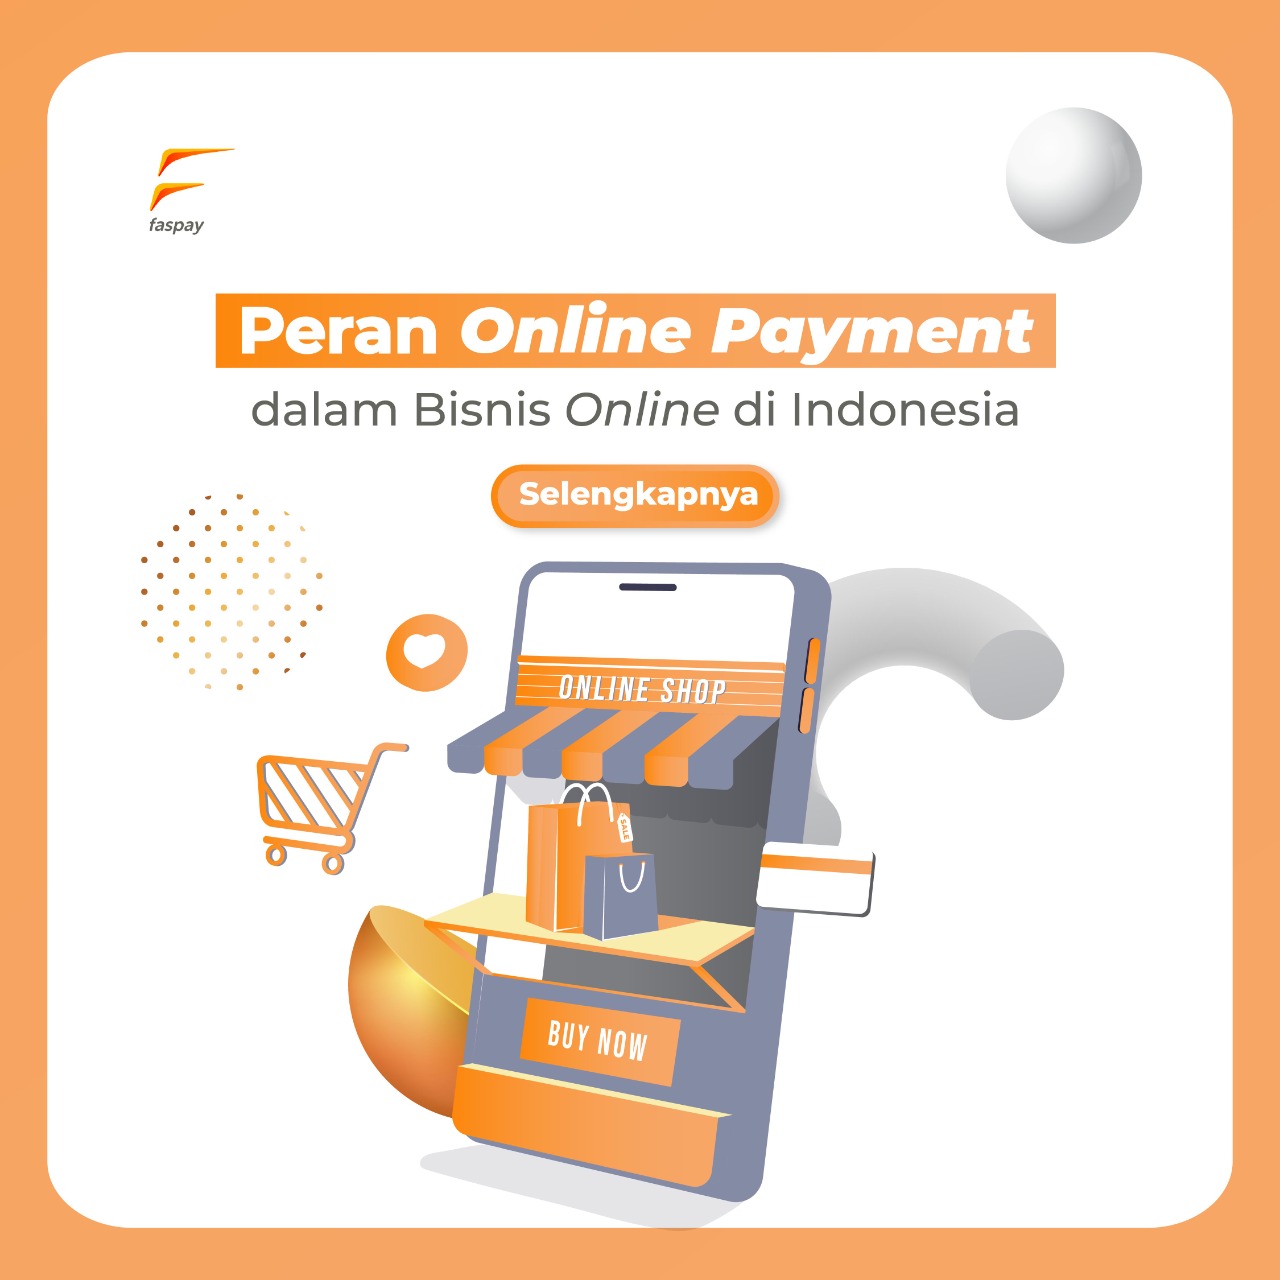 Peran Online Payment dalam Bisnis Online di Indonesia